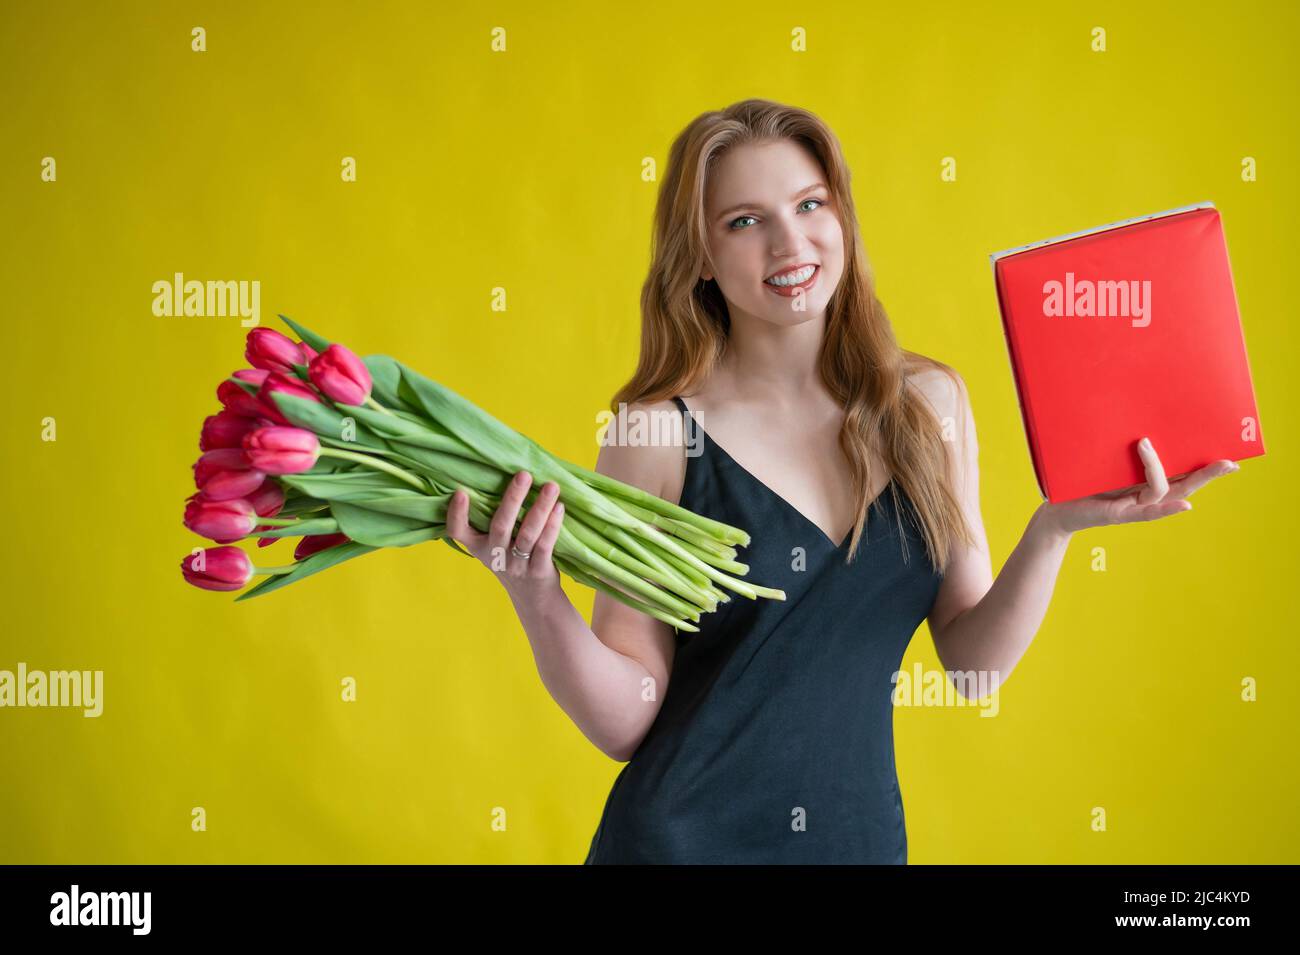 Femme avec un bouquet de tulipes rouges sur fond jaune.Une fille heureuse dans une robe noire tient une armful de fleurs et une boîte de chocolats.Cadeau pour Banque D'Images